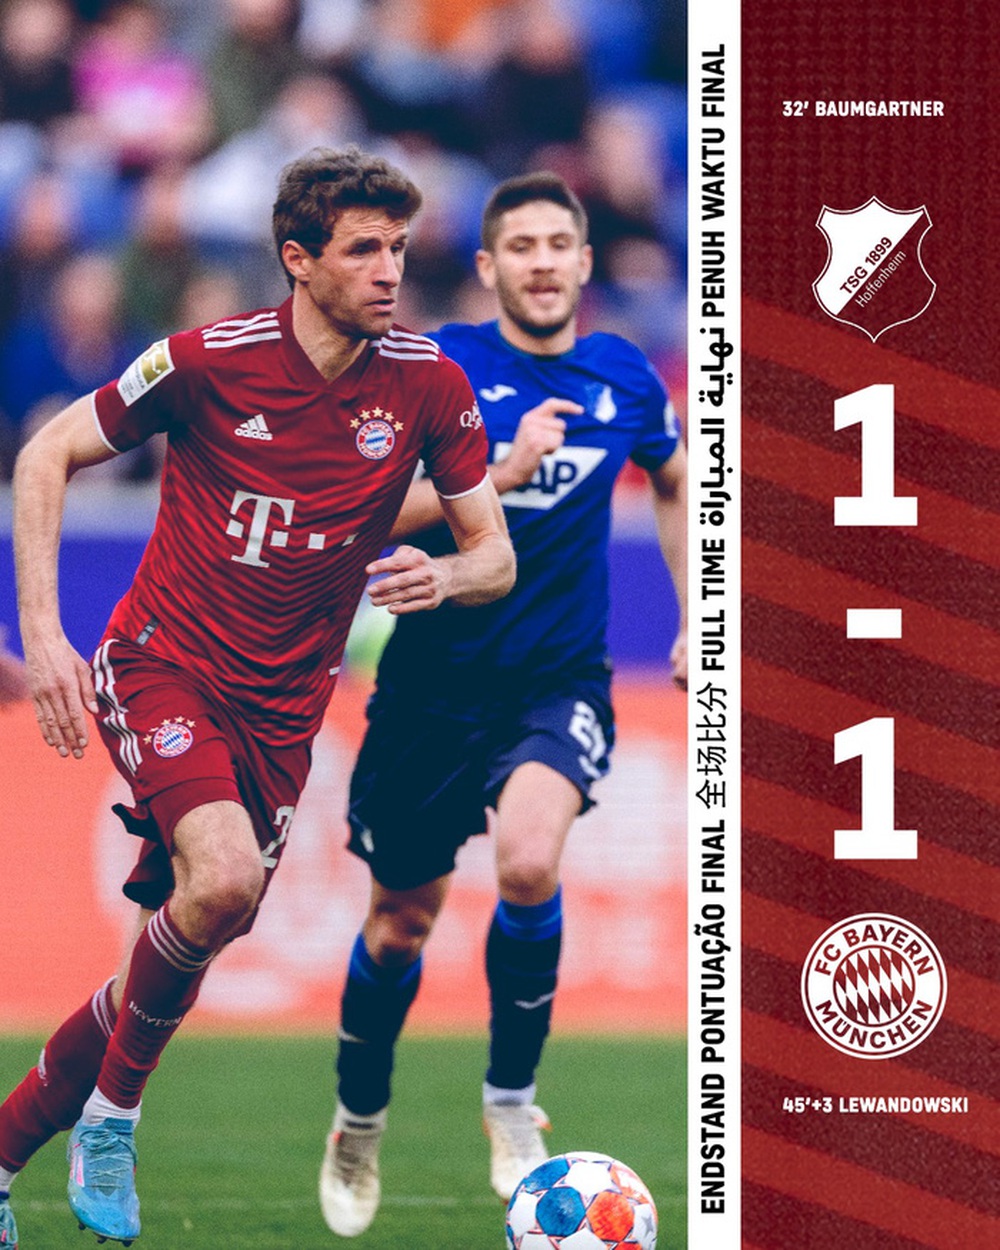 Bayern rơi điểm trước Hoffenheim dù có 4 lần đưa bóng vào lưới đối thủ - Ảnh 24.